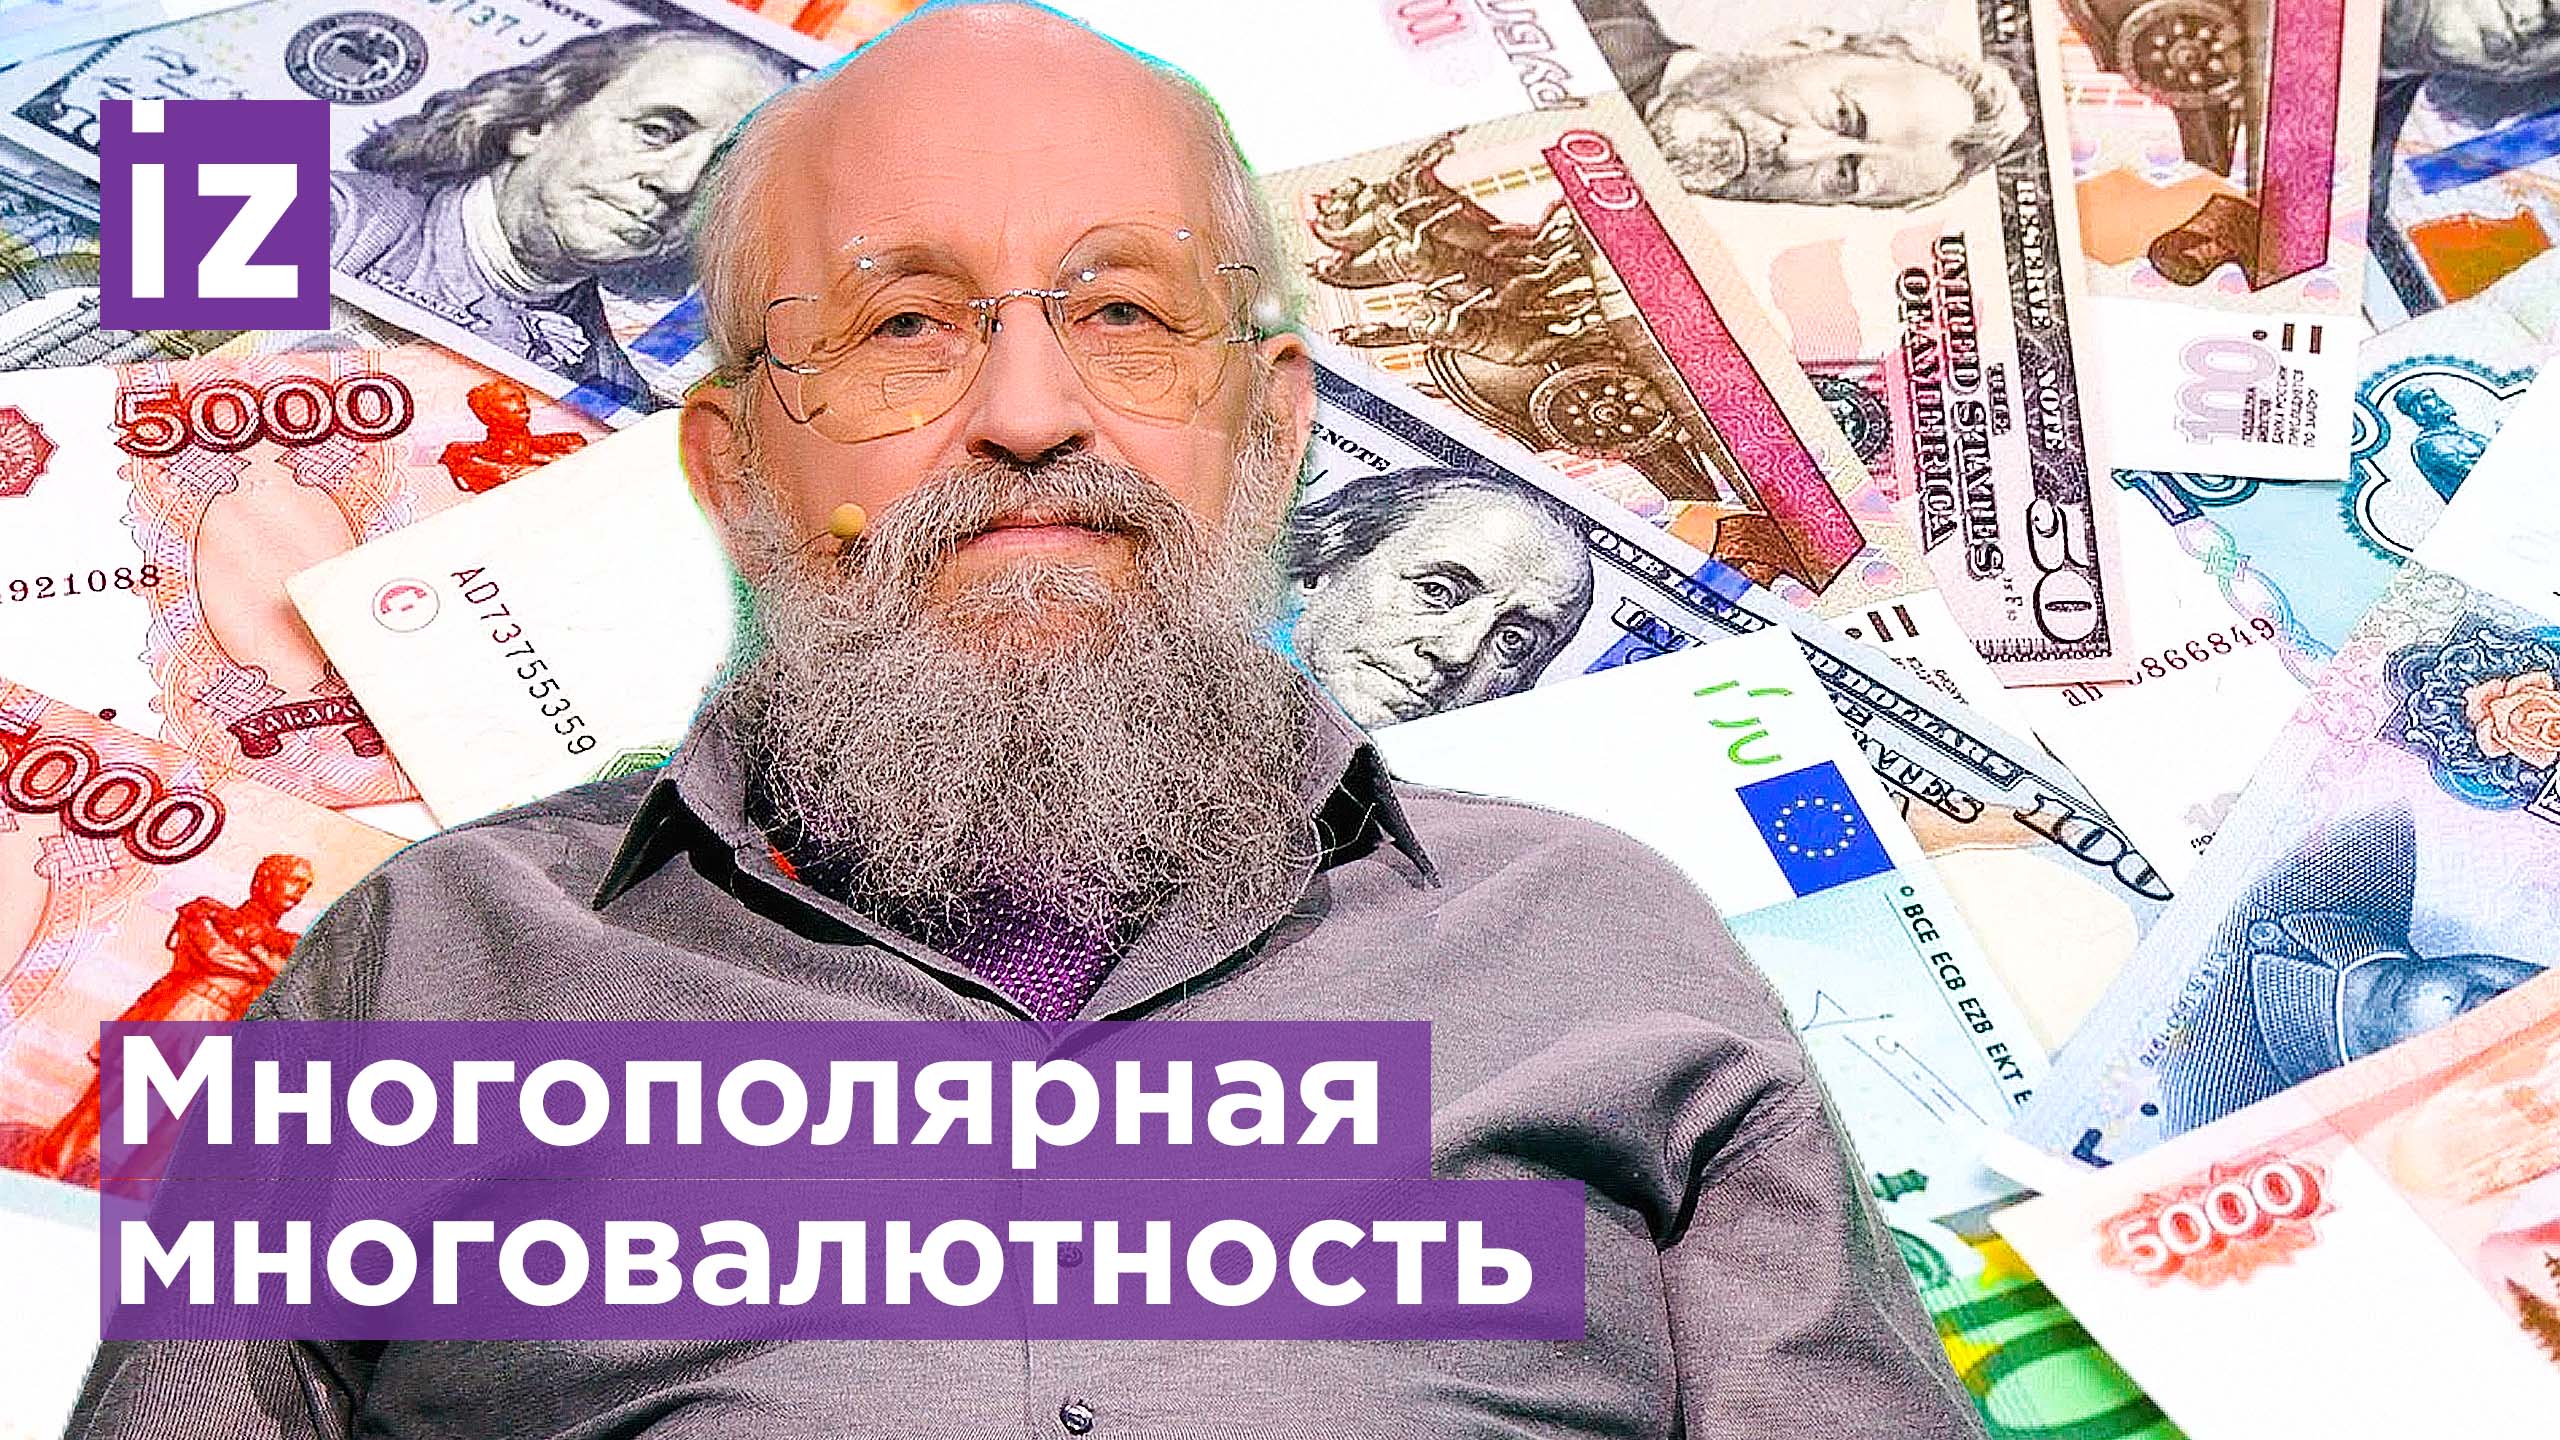 СГА пытаются объявить РФ банкротом / ОТКРЫТЫМ ТЕКСТОМ с Анатолией Вассерманом